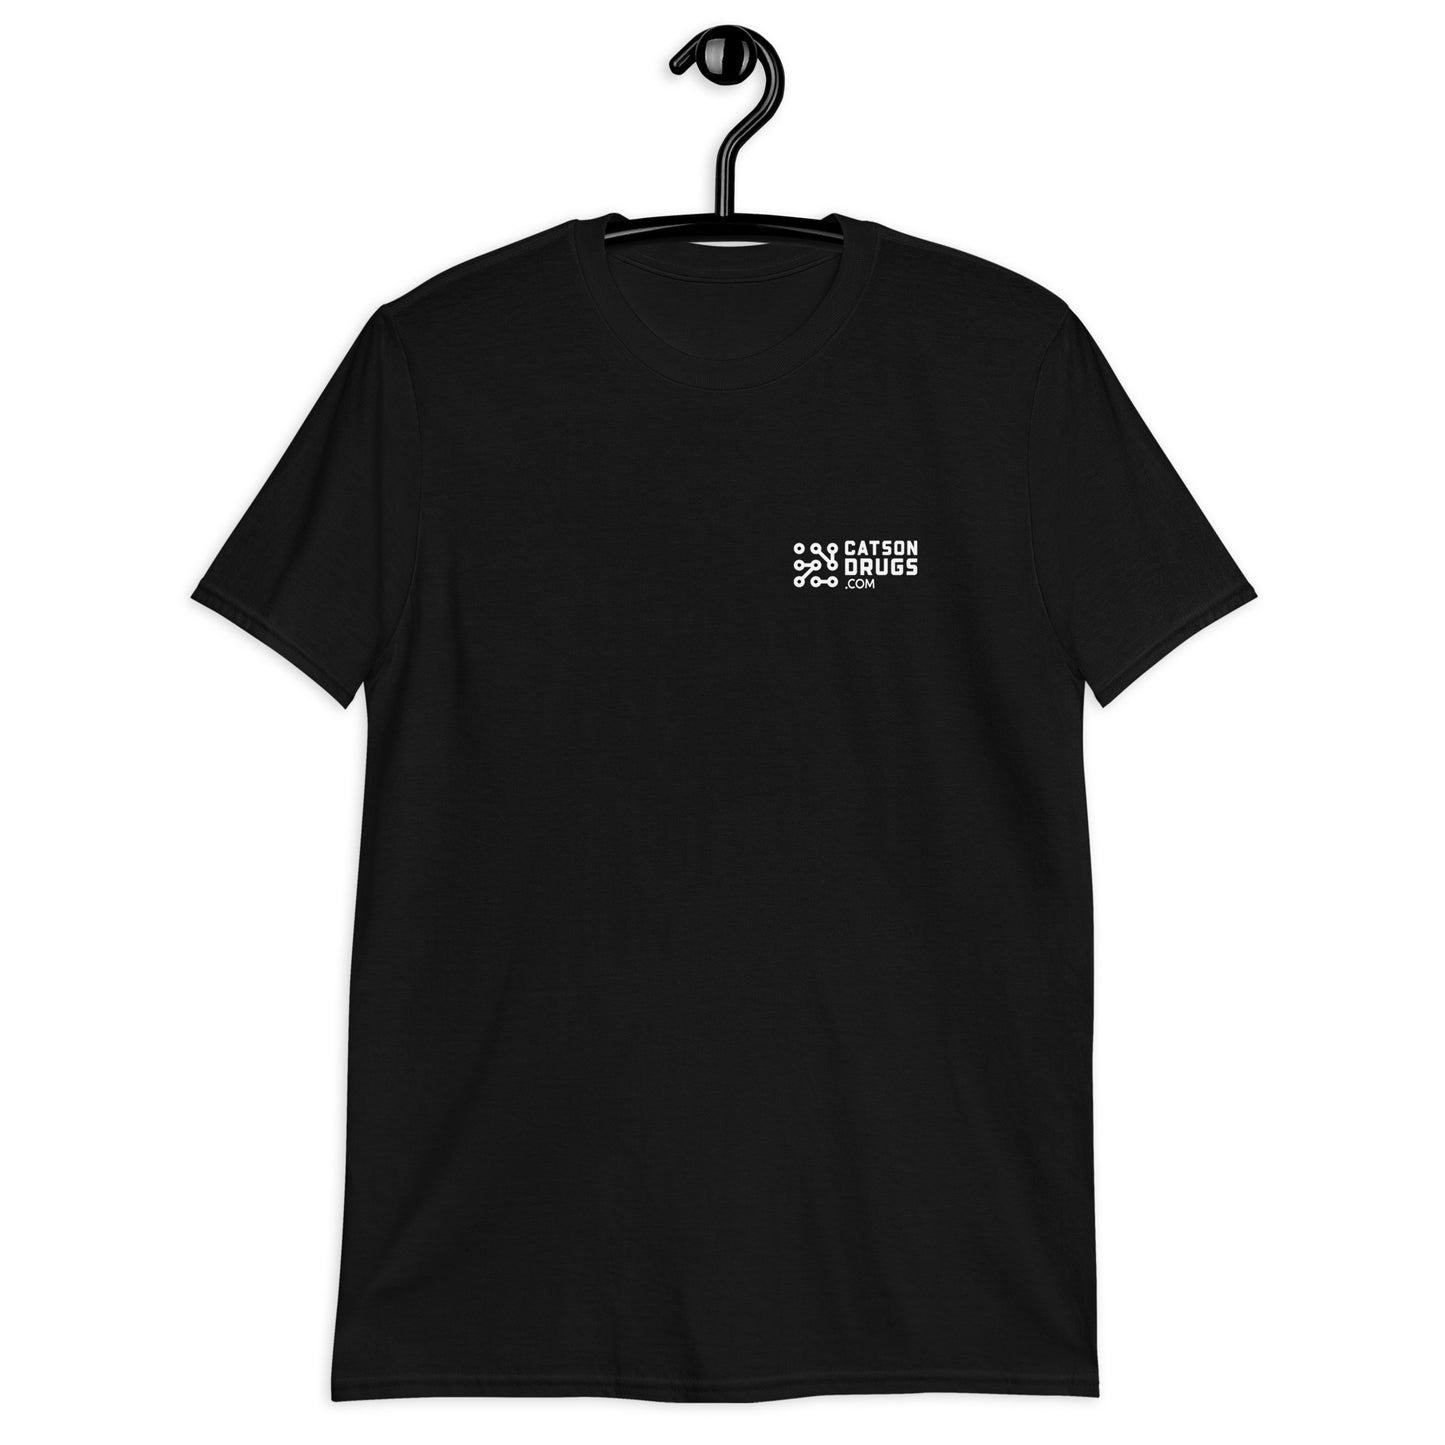 Bleib ruhig und tanze weiter - Unisex T-Shirt